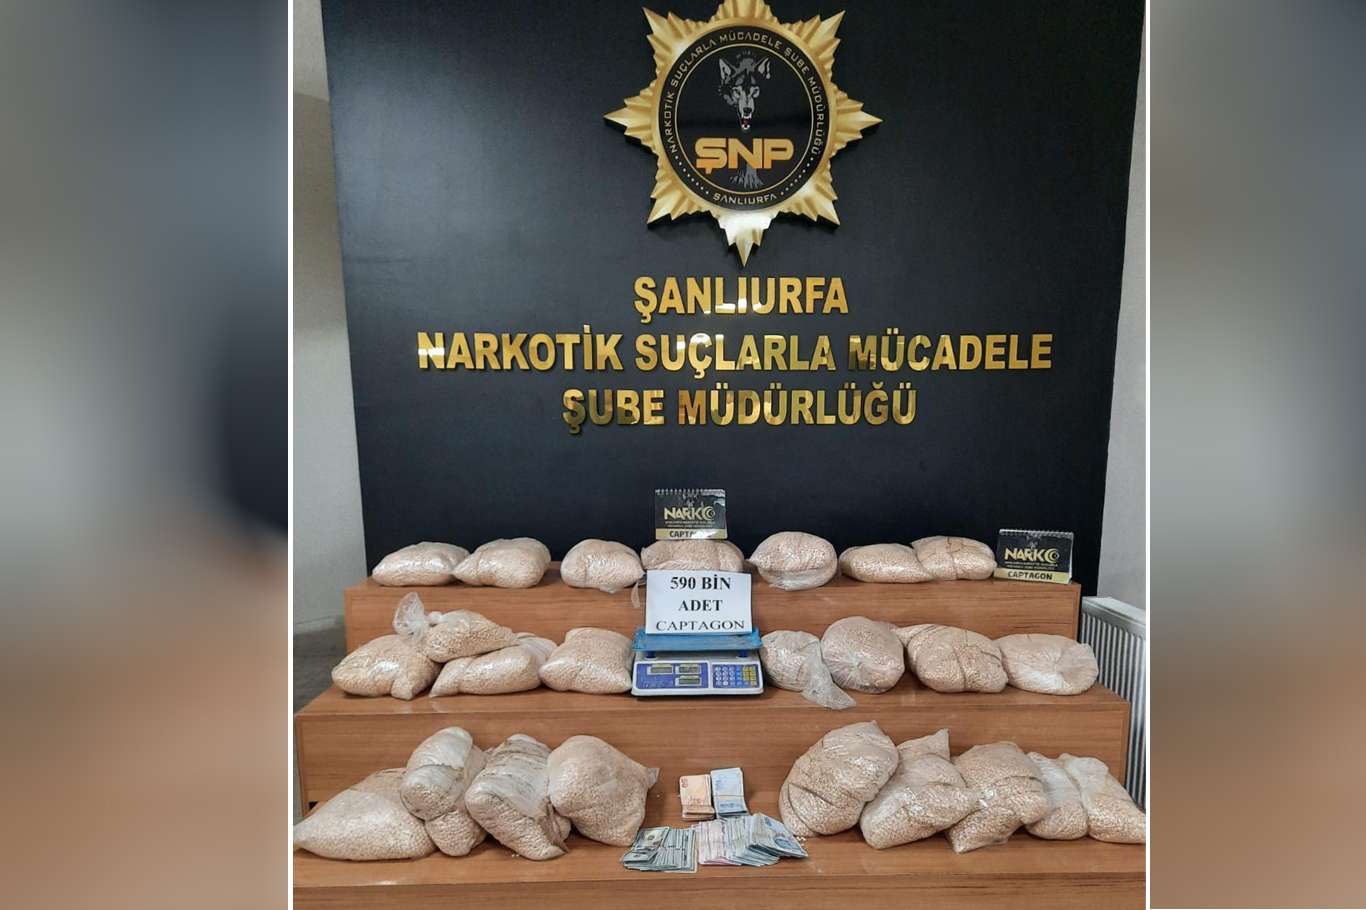 Şanlıurfa'da bir depoya yapılan operasyonda uyuşturucu hap ele geçirildi